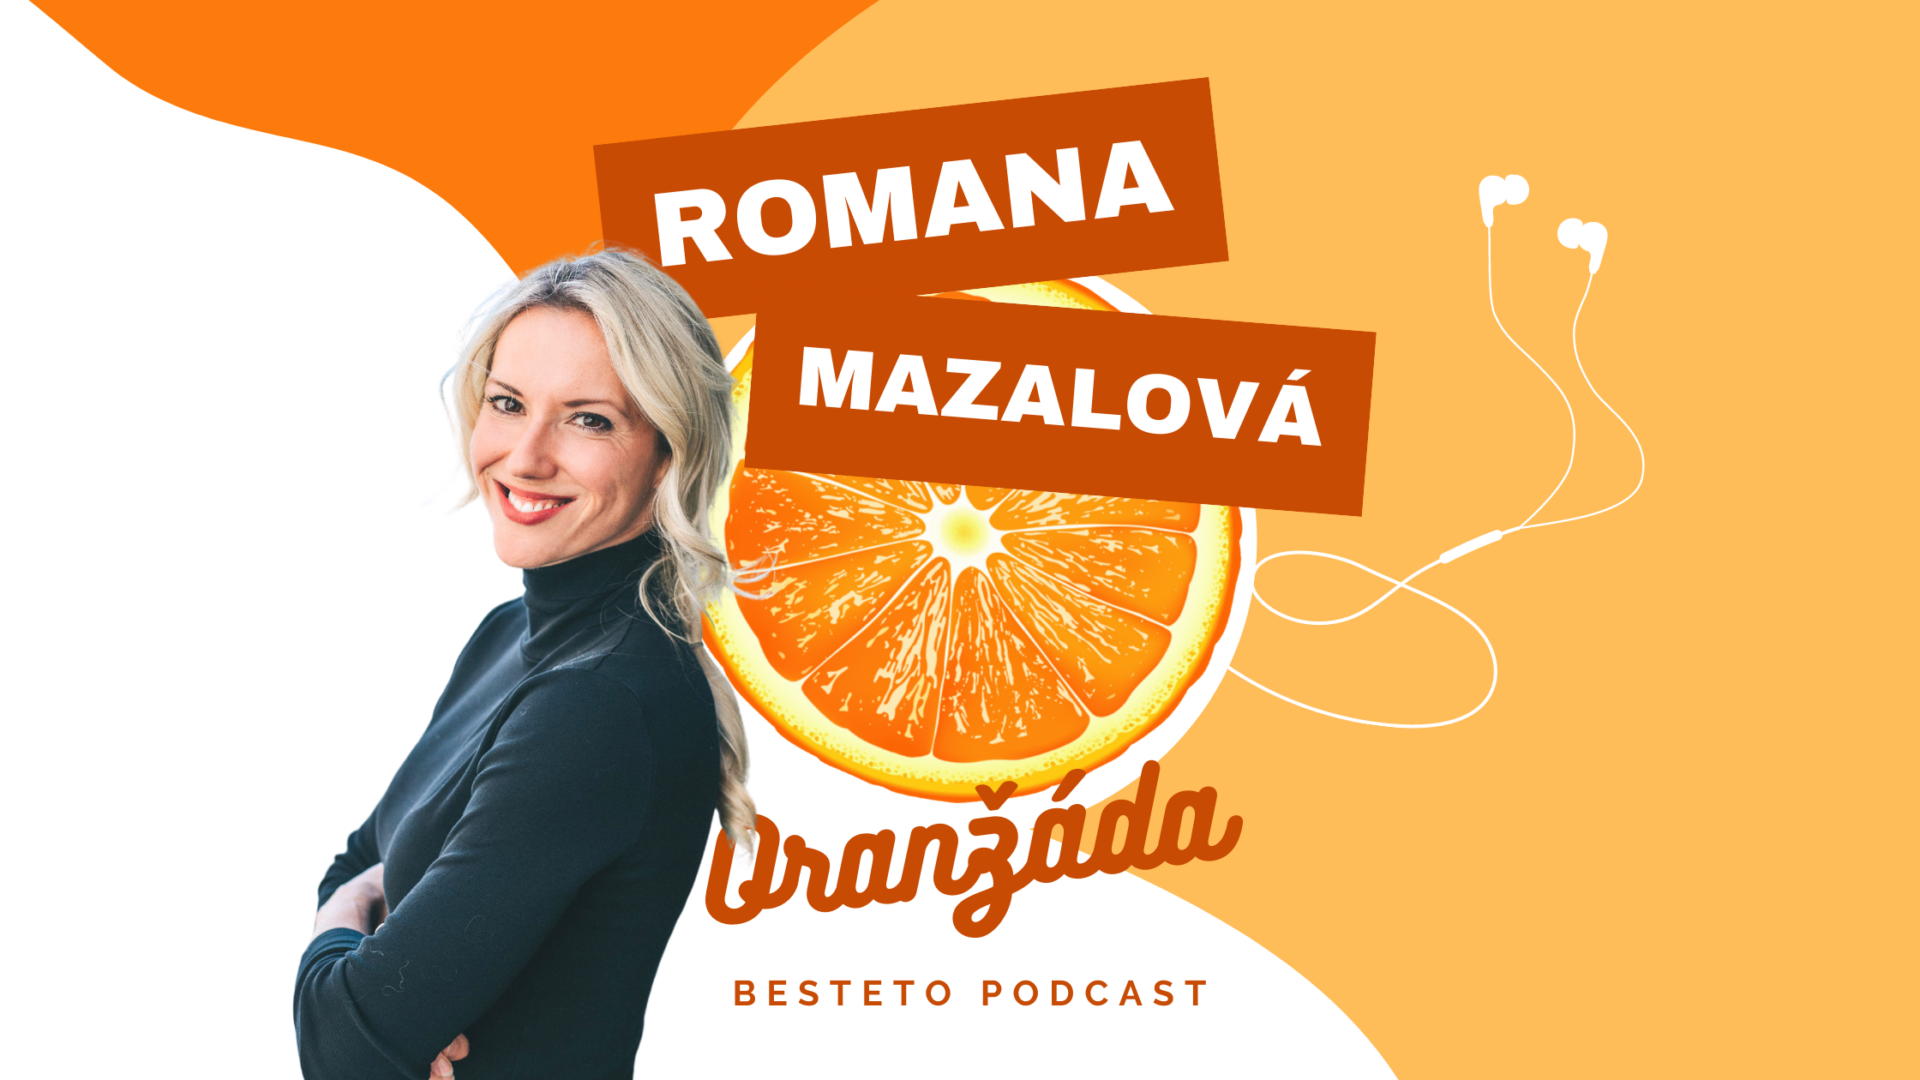 Romana Mazalová - Oranžáda podcast